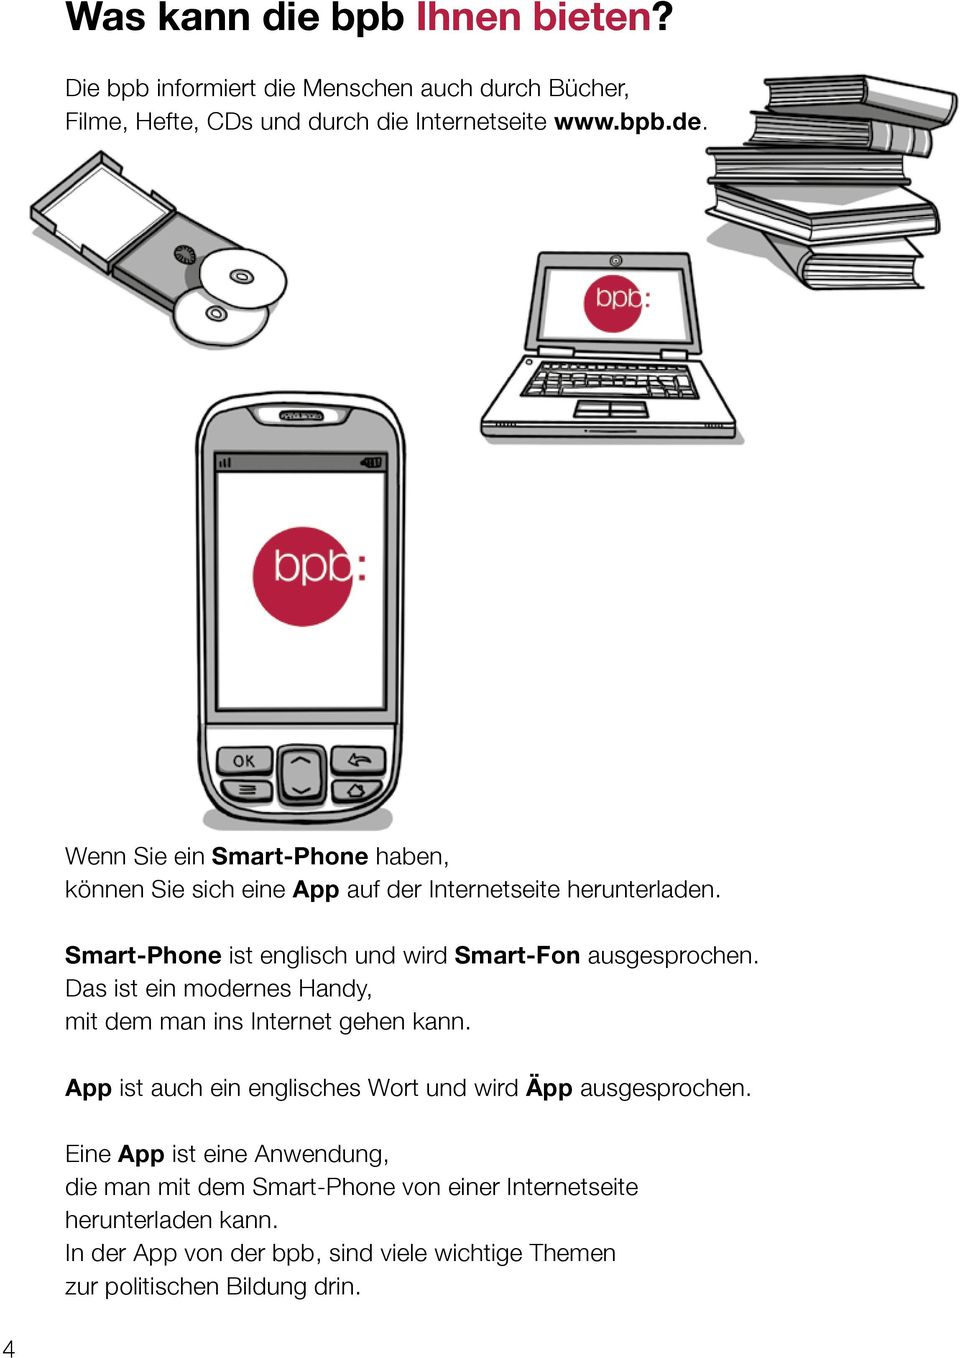 Smart-Phone ist englisch und wird Smart-Fon ausgesprochen. Das ist ein modernes Handy, mit dem man ins Internet gehen kann.